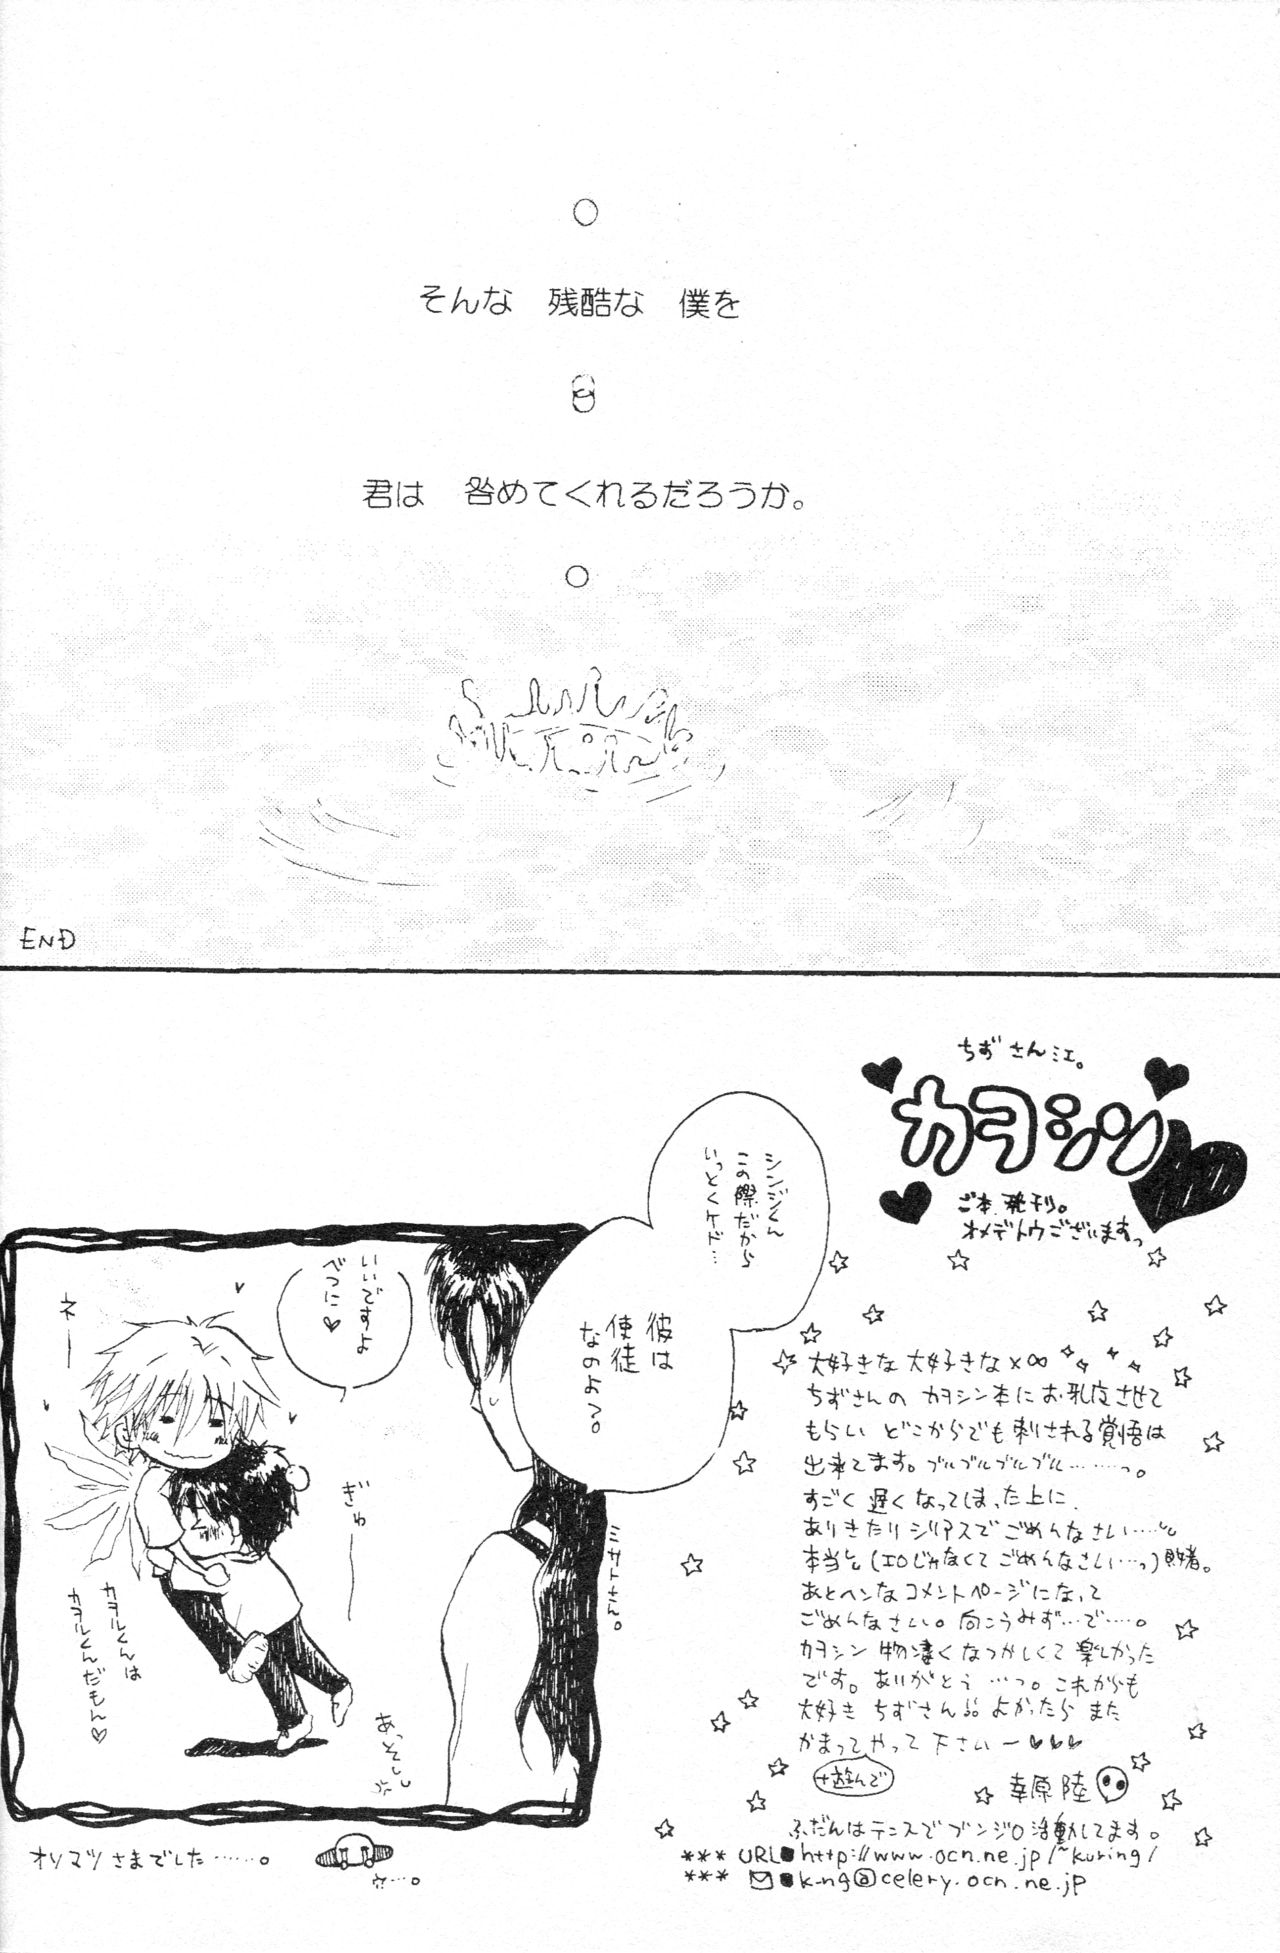 (C70) [Chizuma! (ちず丸)] PSPエヴァ2ノススメ (新世紀エヴァンゲリオン)